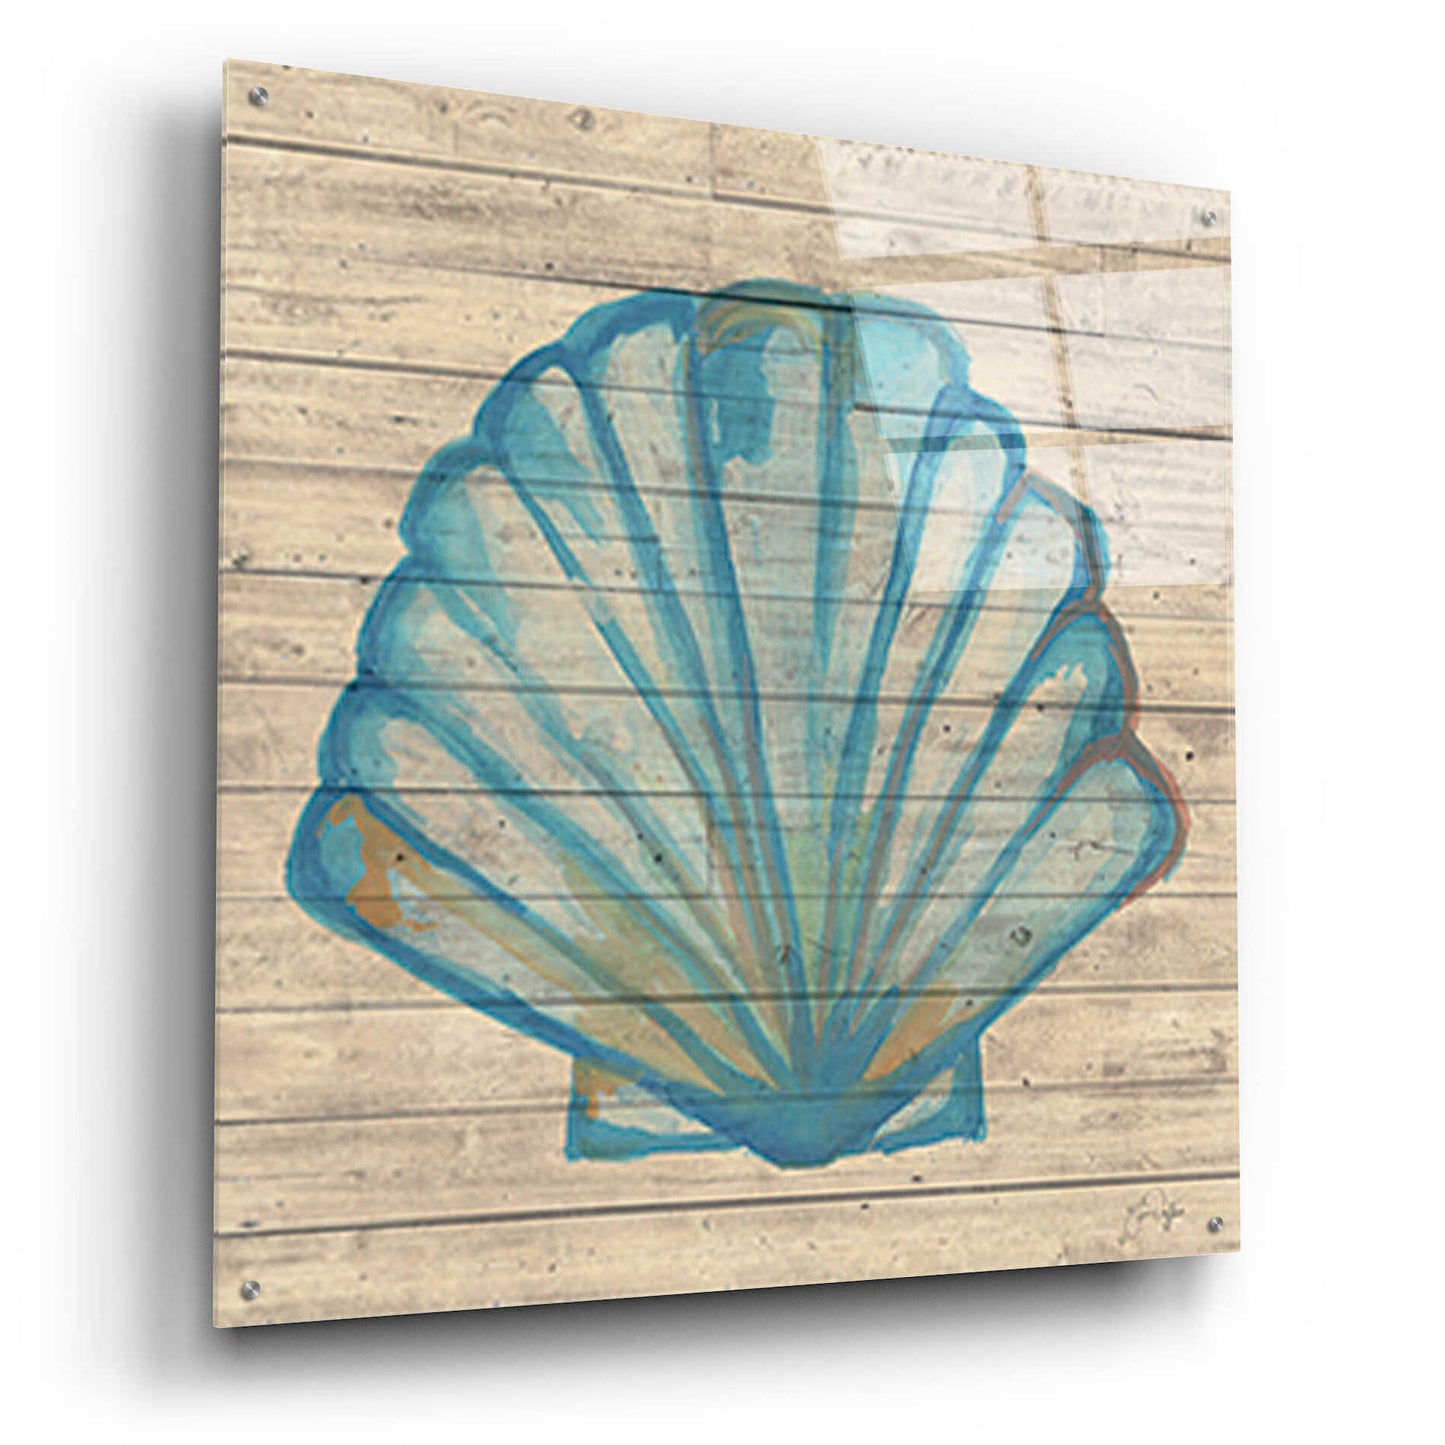 Epic Art 'A Seashell Wish' by Yass Naffas Designs, Acrylic Glass Wall Art,36x36